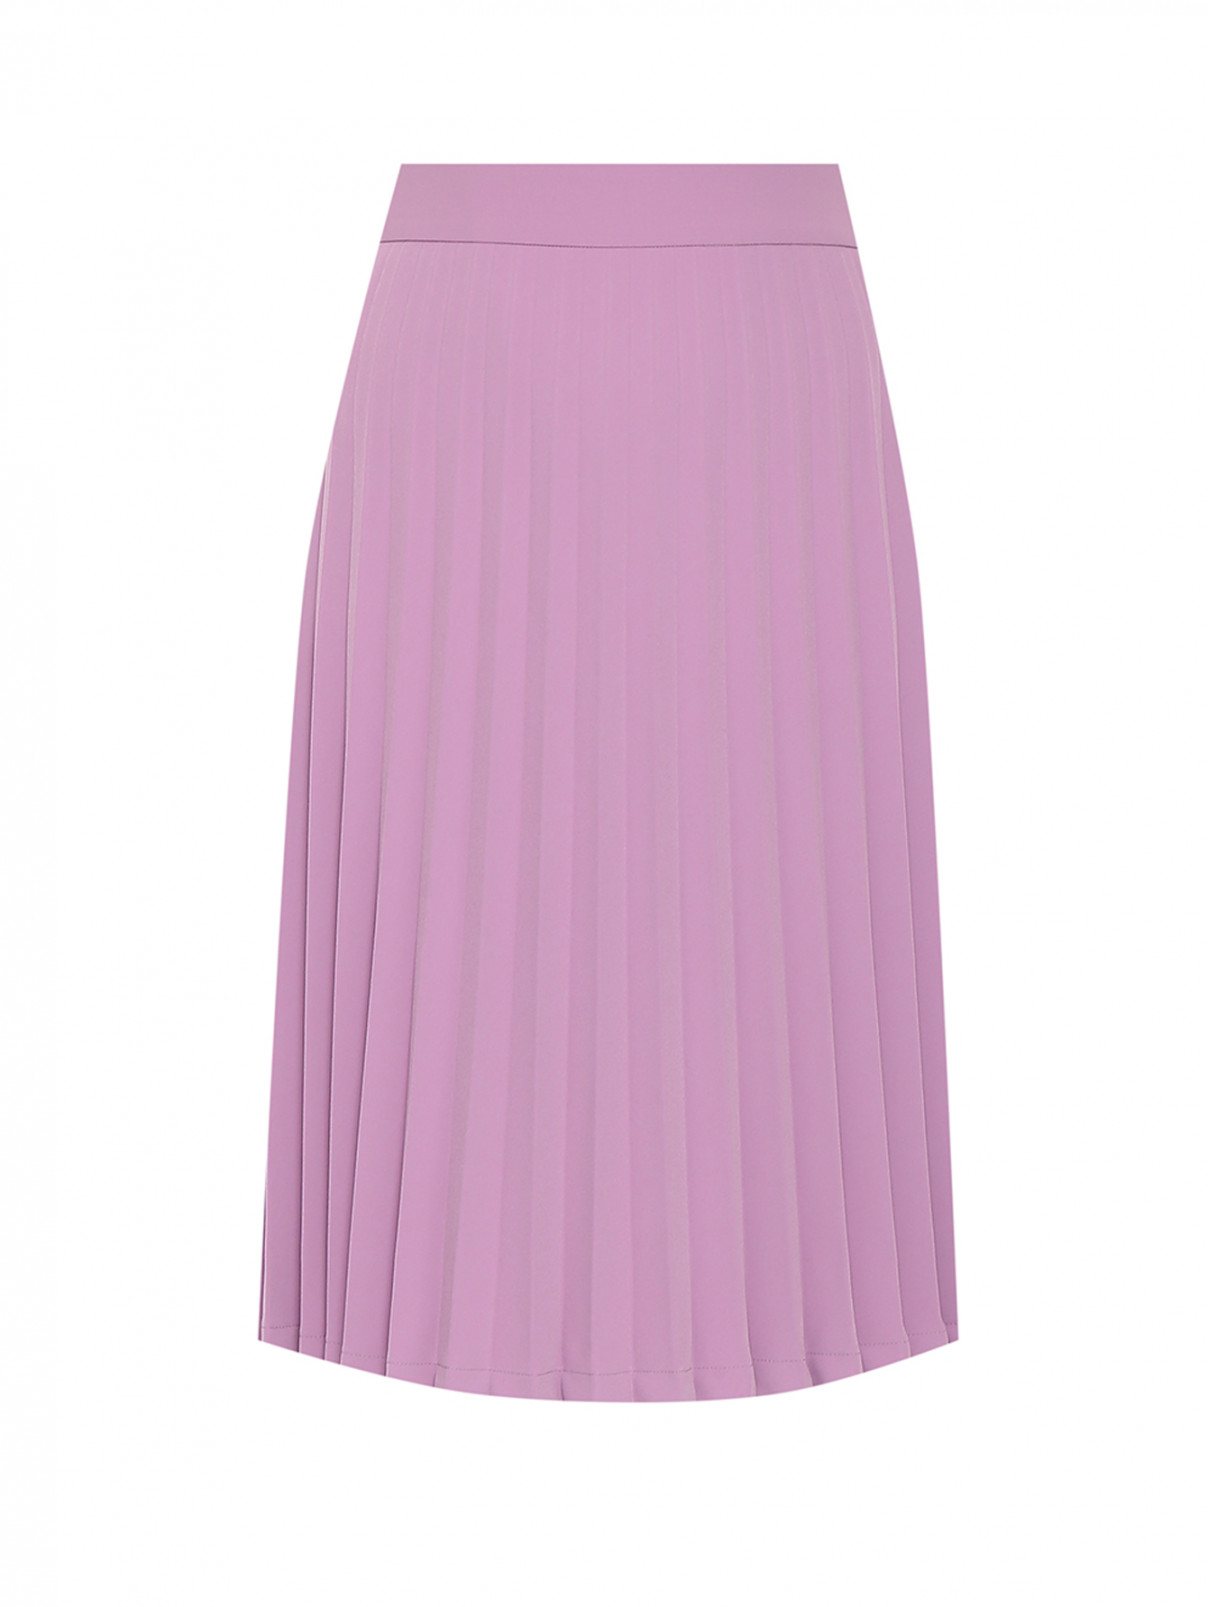 Плиссированная юбка-миди Moschino Boutique  –  Общий вид  – Цвет:  Фиолетовый